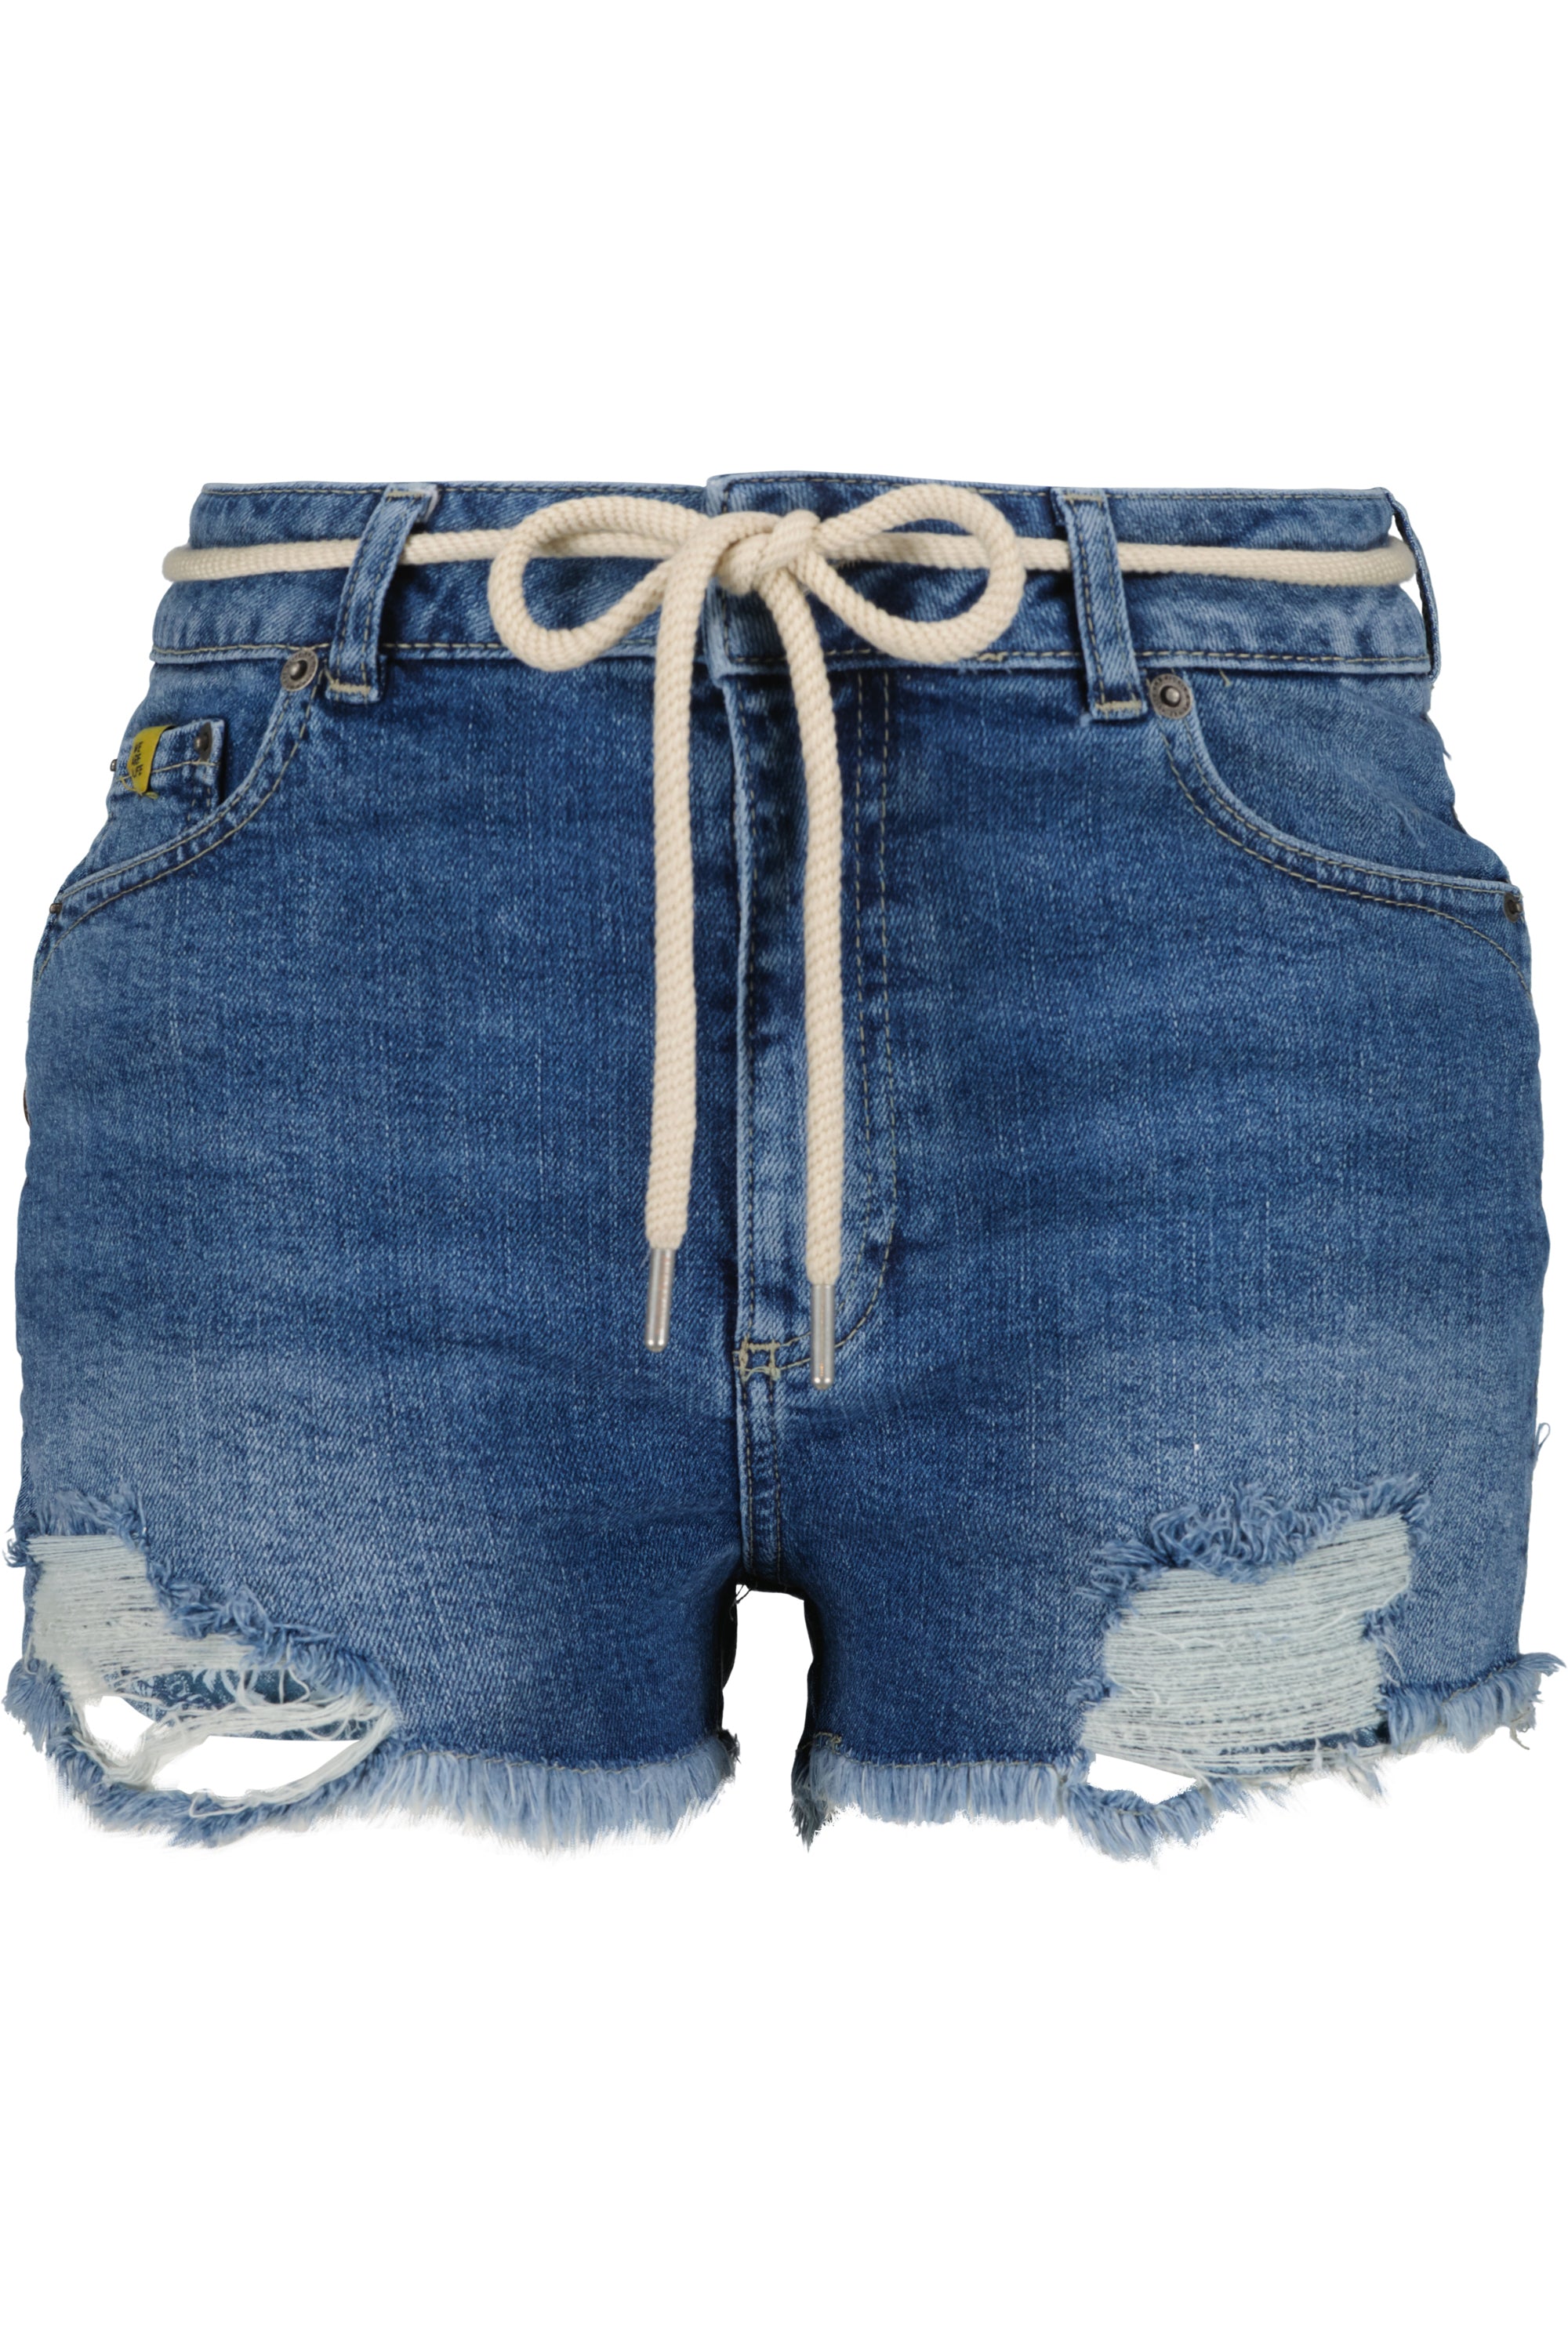 Stylische Hotpants: LatoyaAK DNM A für Frauen Dunkelblau